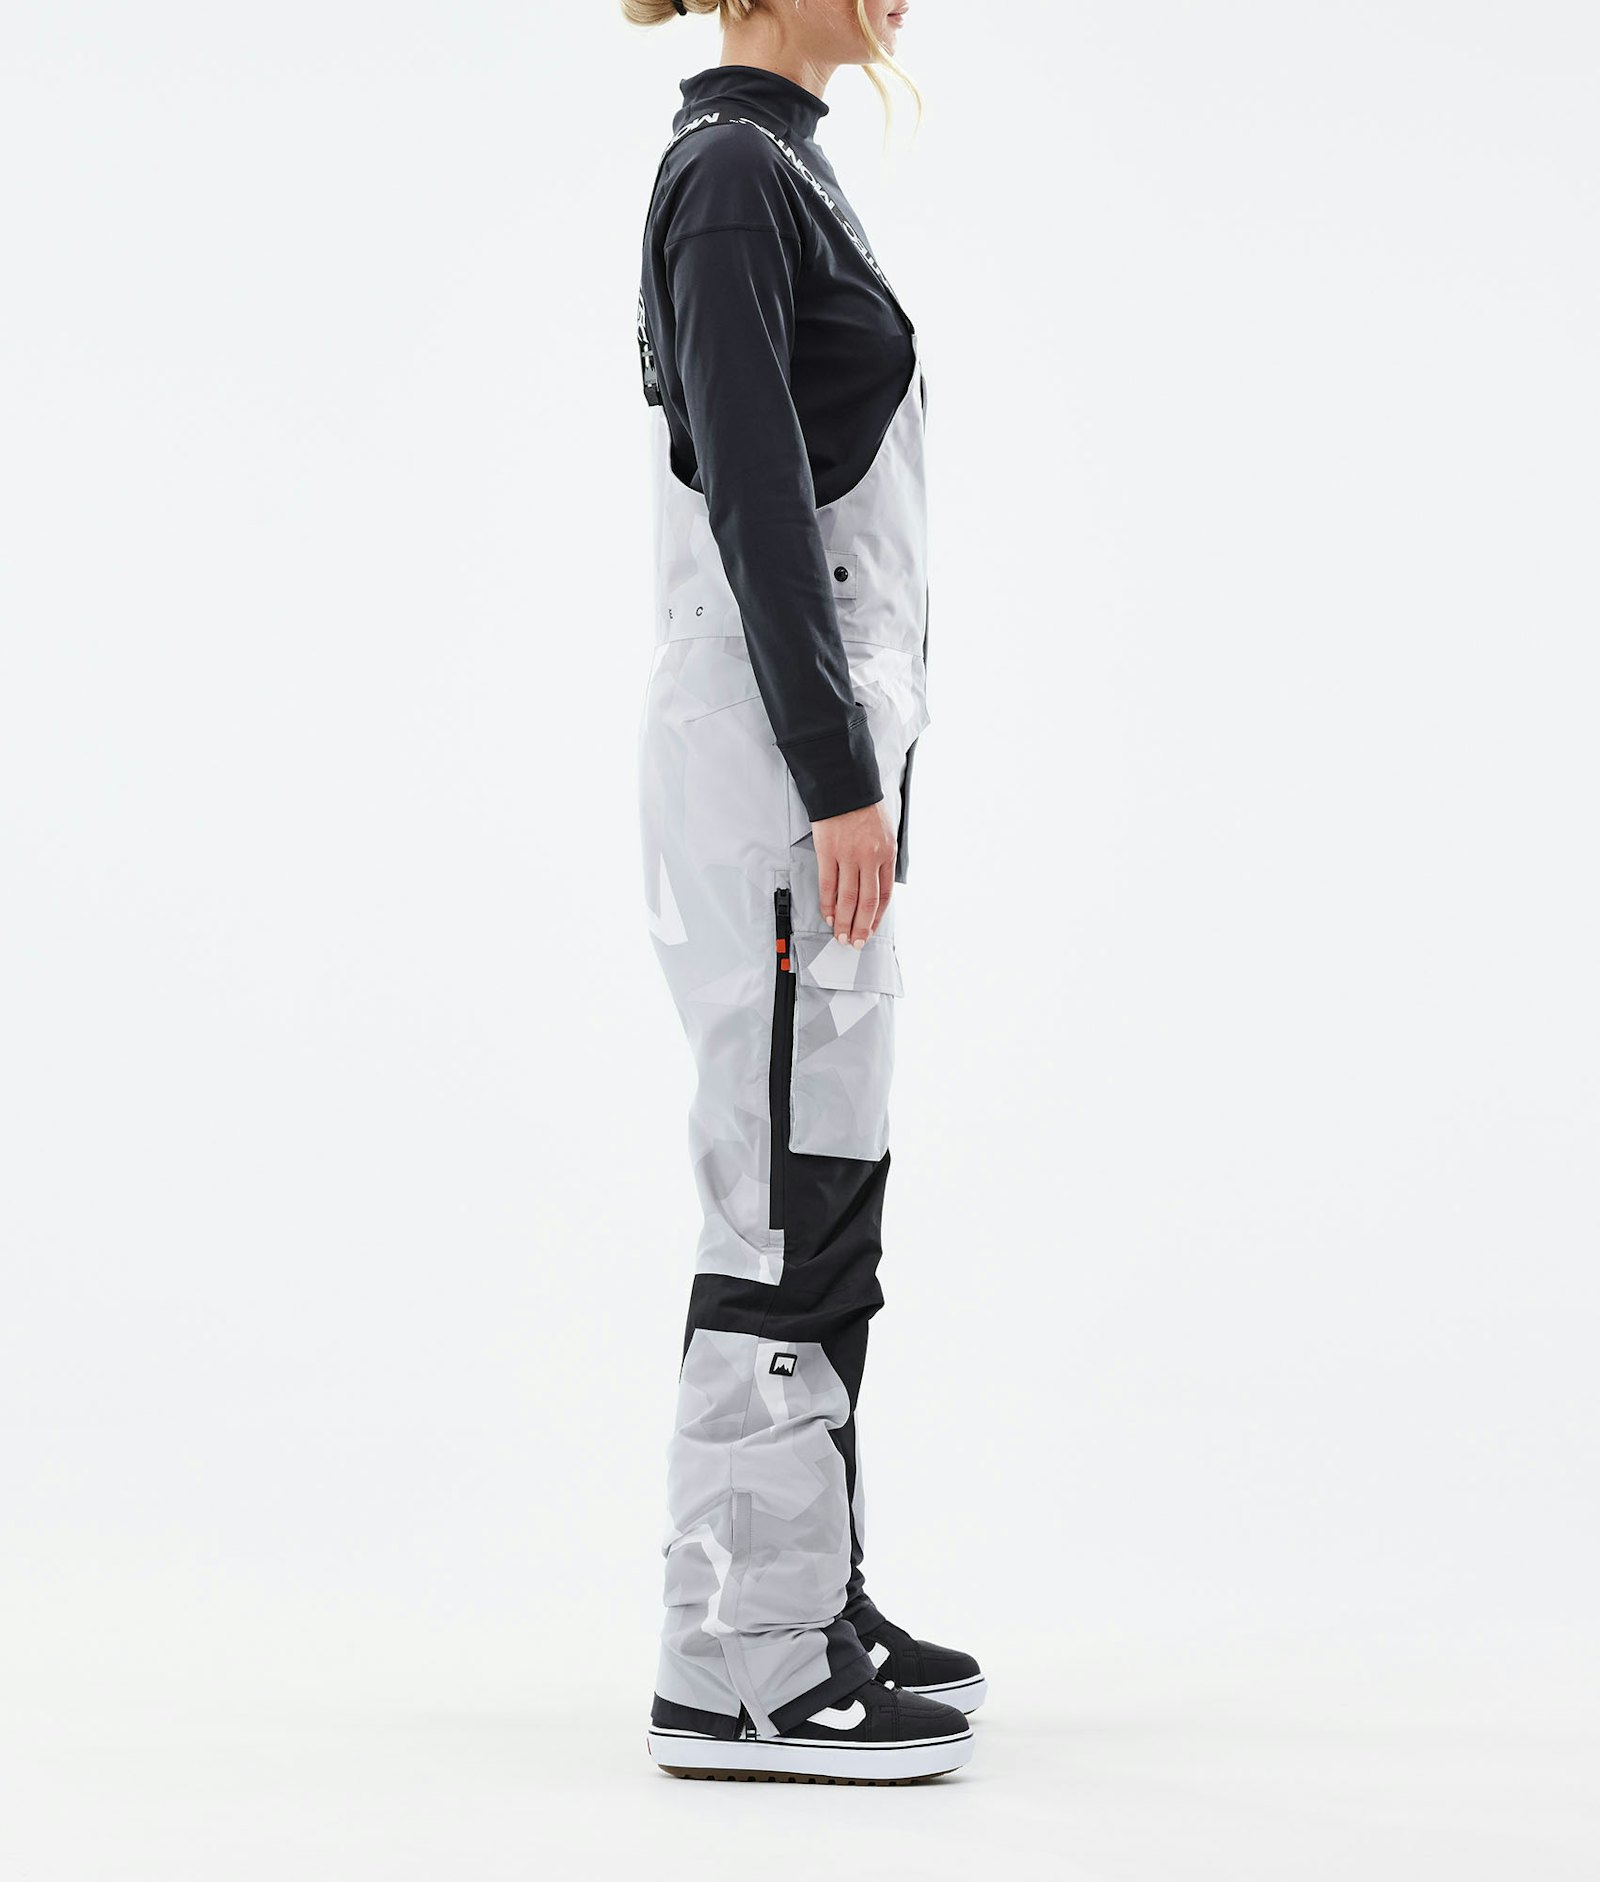 Fawk W 2021 Pantalon de Snowboard Femme Snow Camo/Black